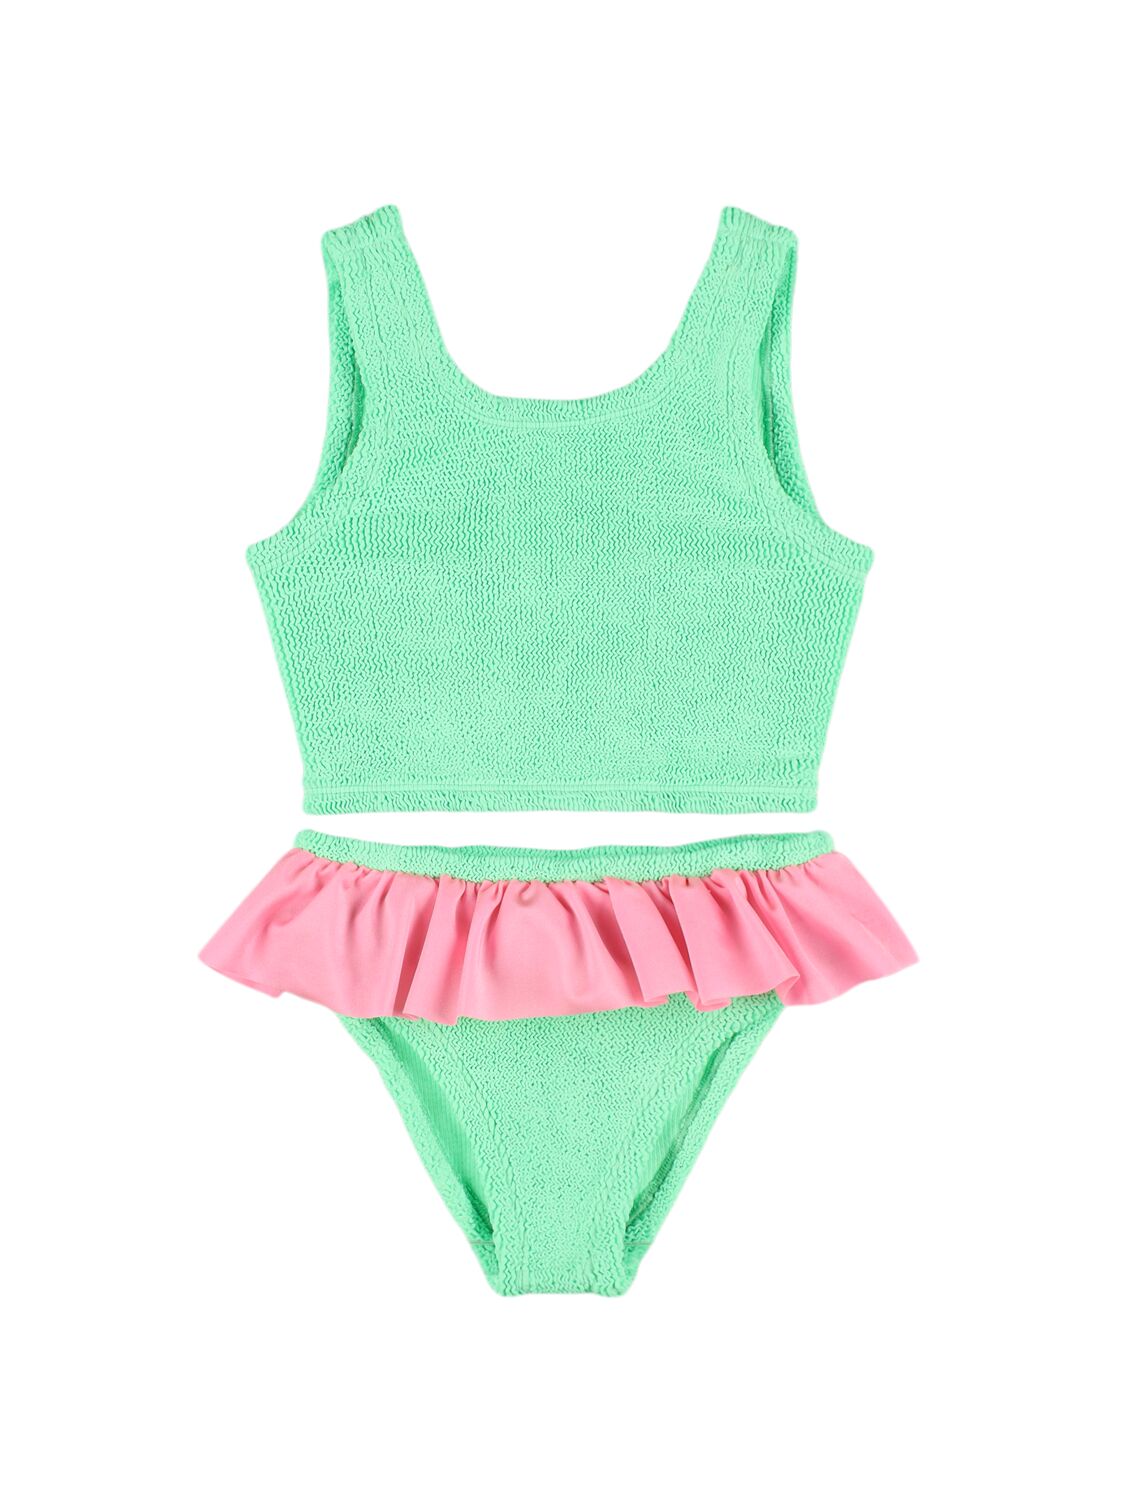 Hunza G Kids' Seersucker Bikini Set W/ Ruffles In 绿黄色,粉红色